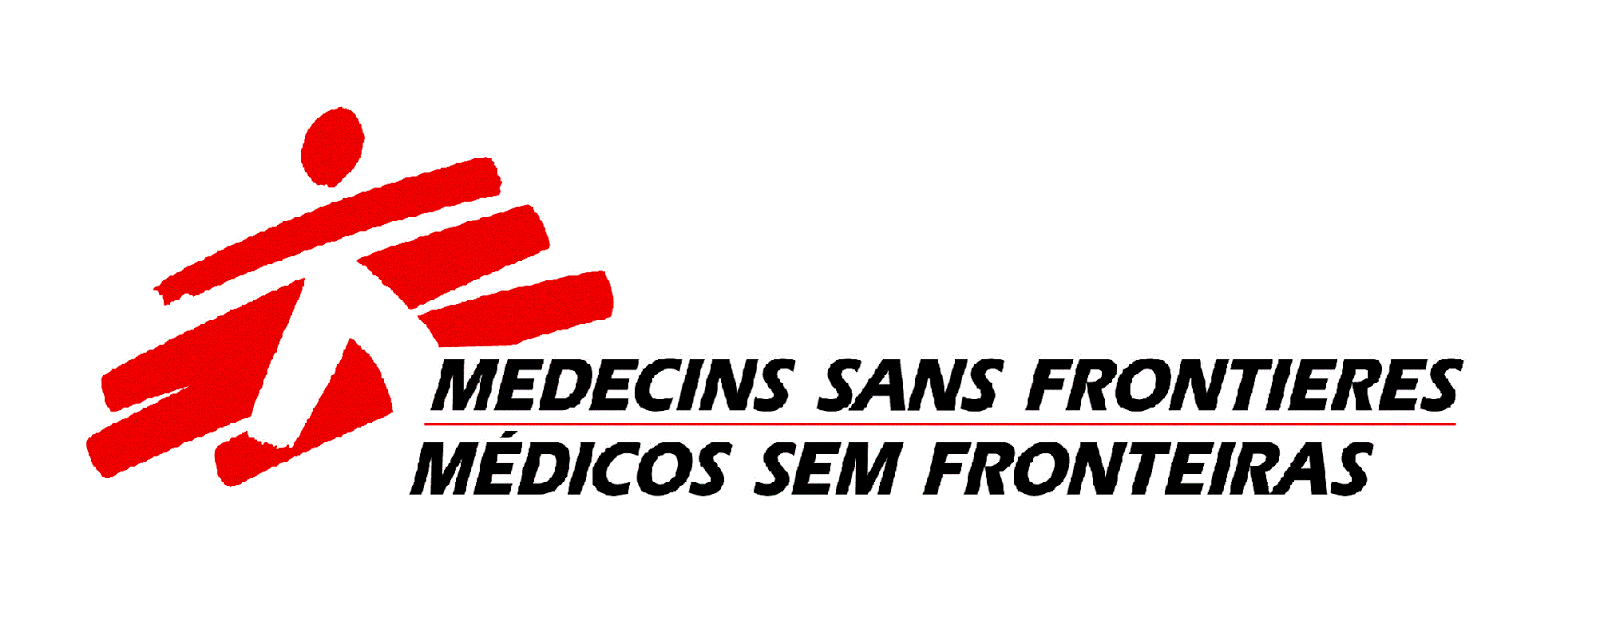 Doação - Médicos Sem Fronteiras